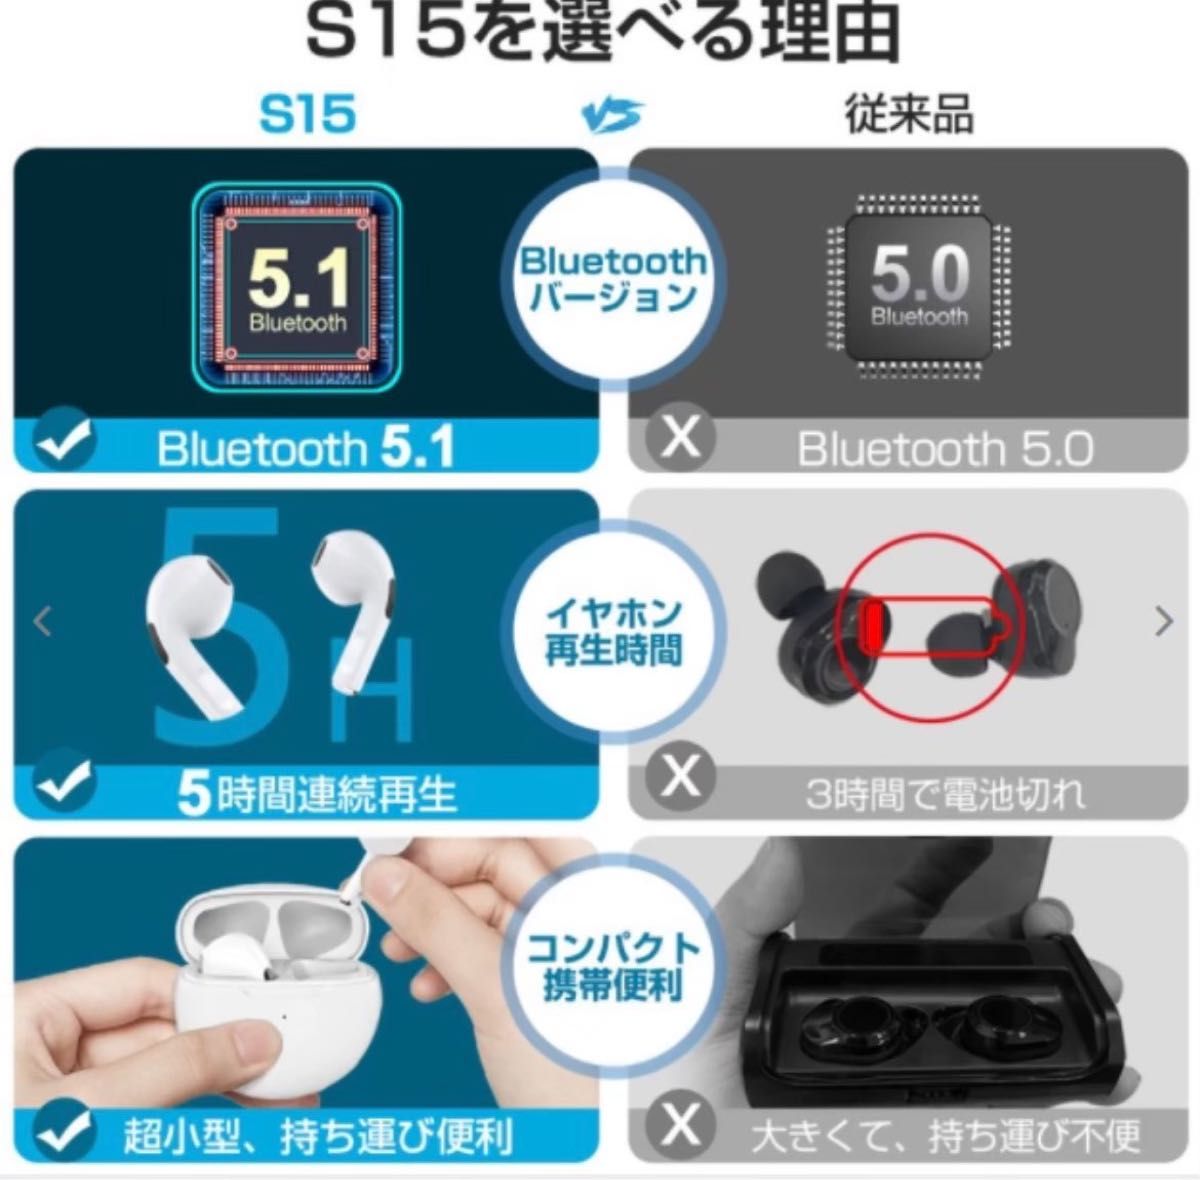 ☆最強コスパ☆最新AirPro6 Bluetoothワイヤレスイヤホン《ホワイト》箱付き